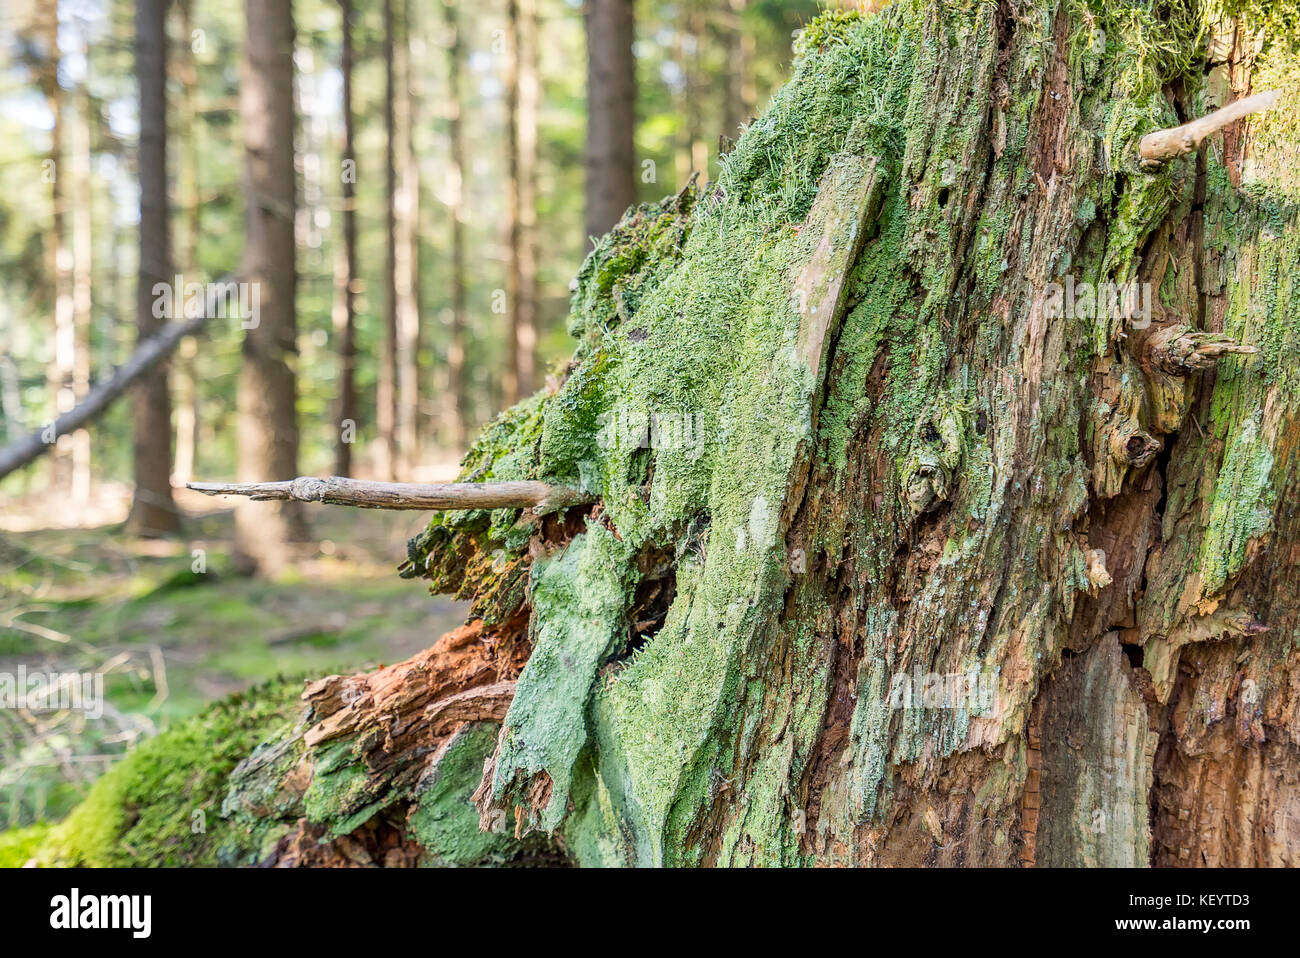 Closeup geschossen von einem dichten Bodendecker Vegetation auf einem Baumstamm mit Moos und Flechten in Wald Ambiente Stockfoto